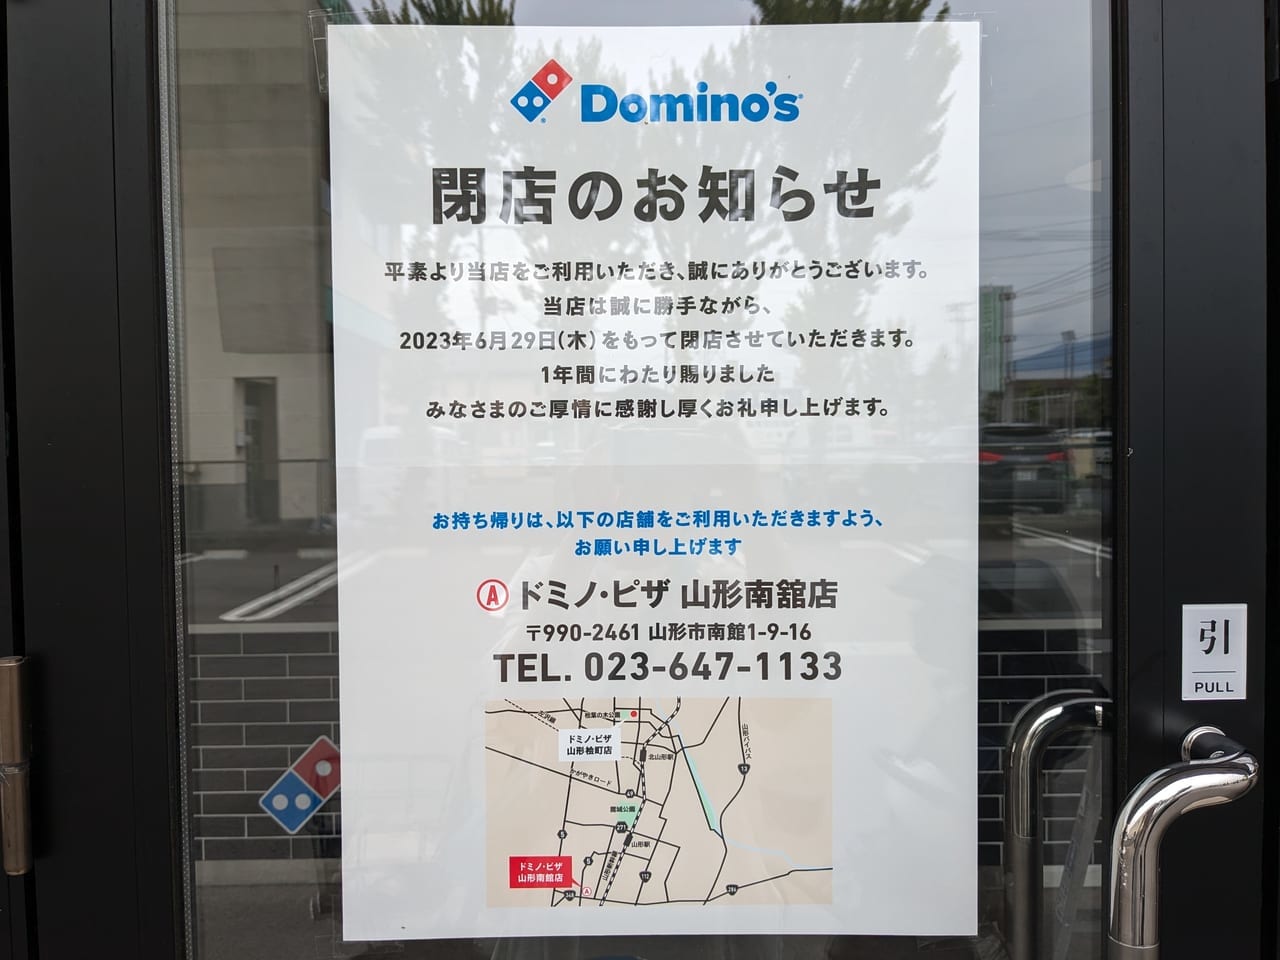 ドミノ・ピザ山形桧町店閉店張り紙